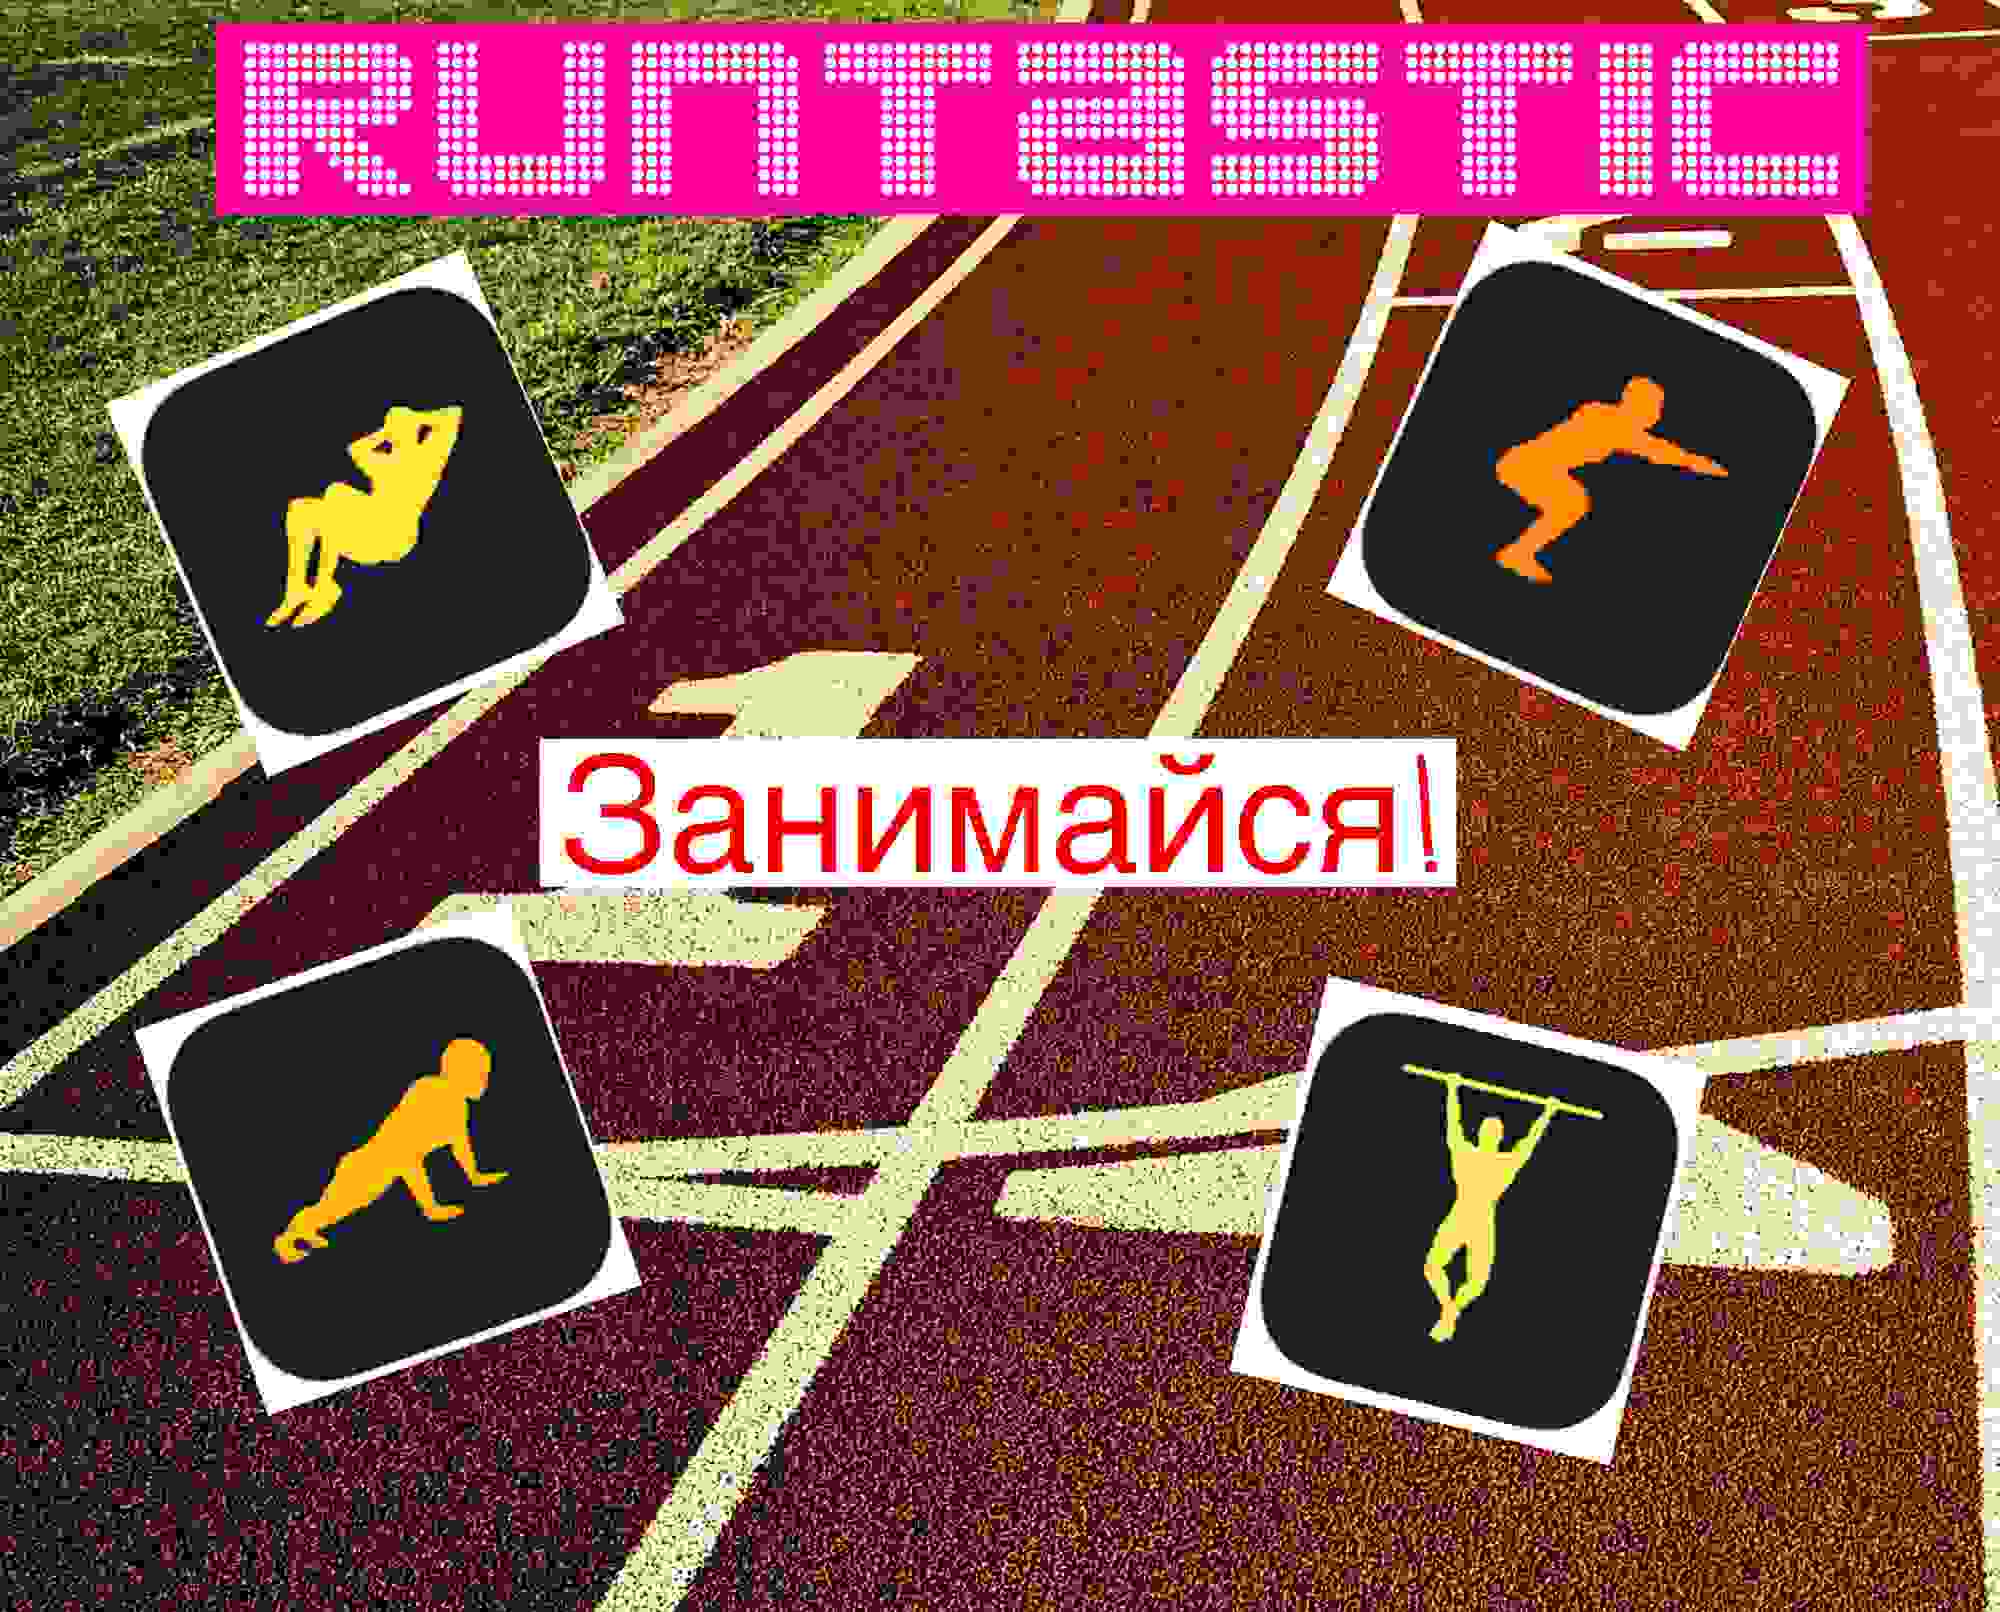 Обзор спортивных приложений от Runtastic